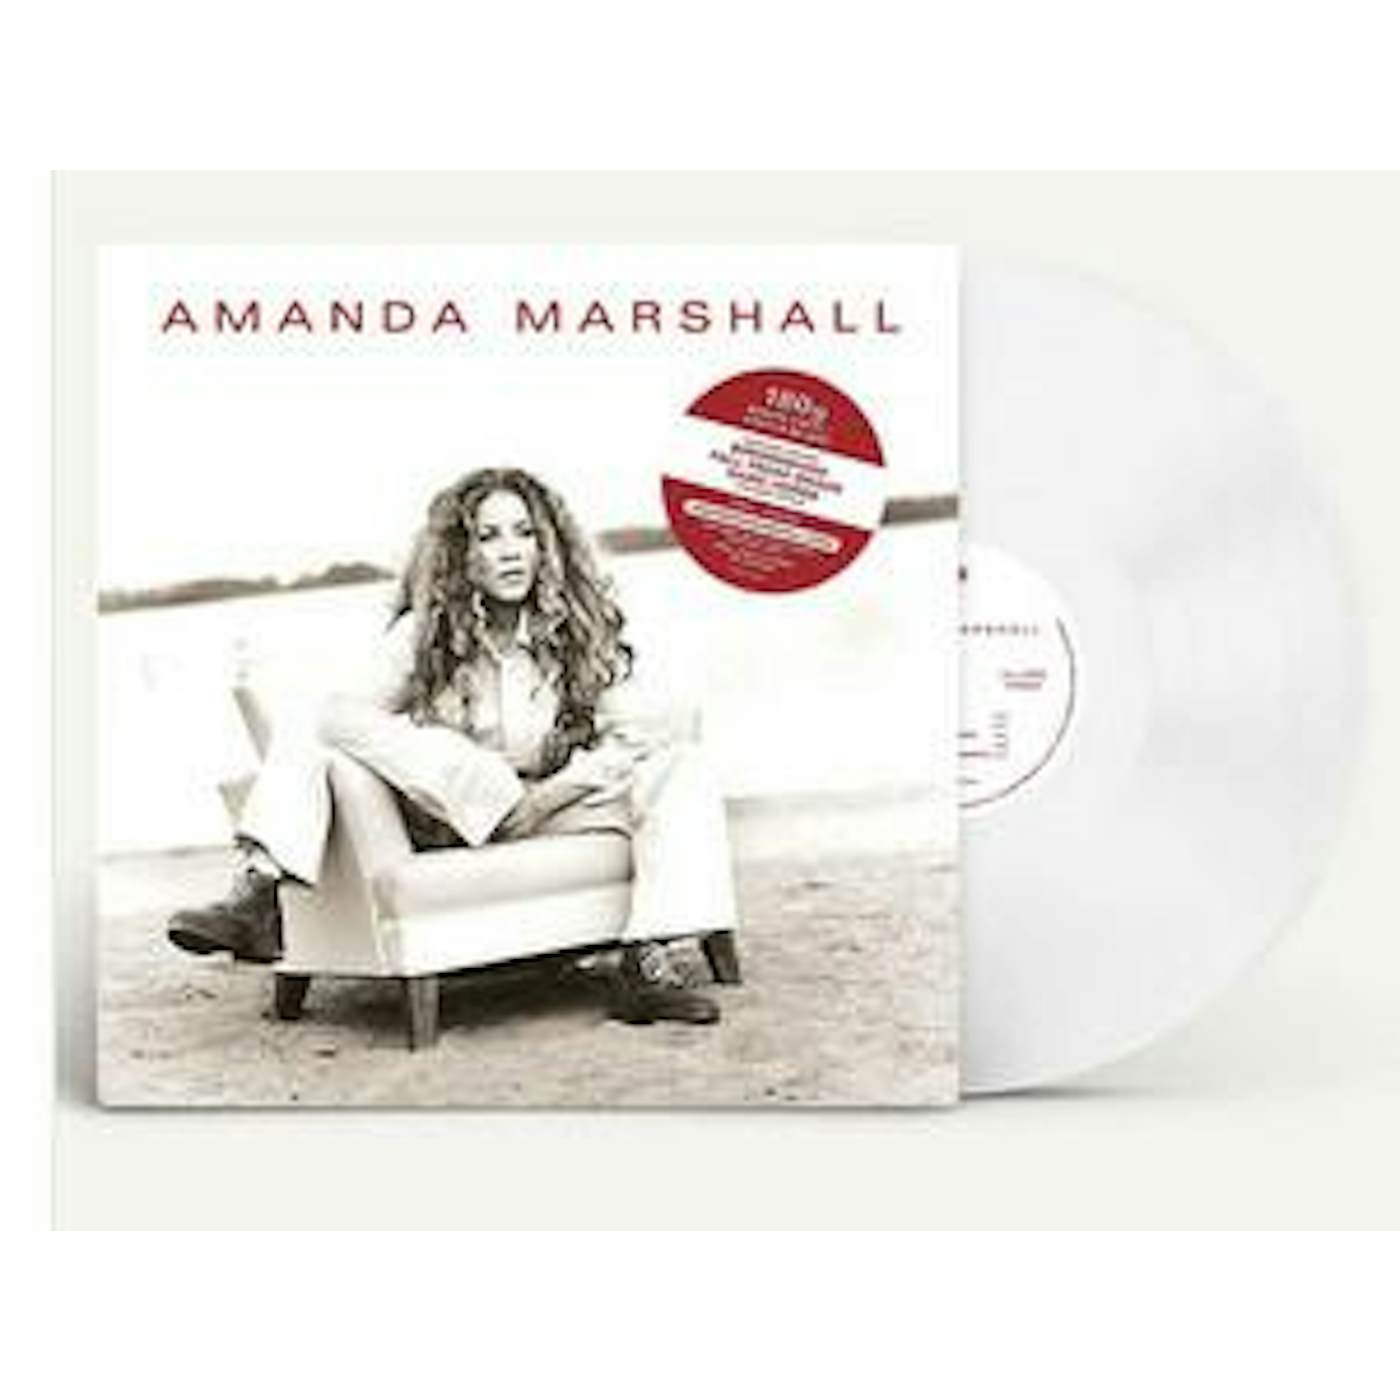 Amanda Marshall Vinyl Record